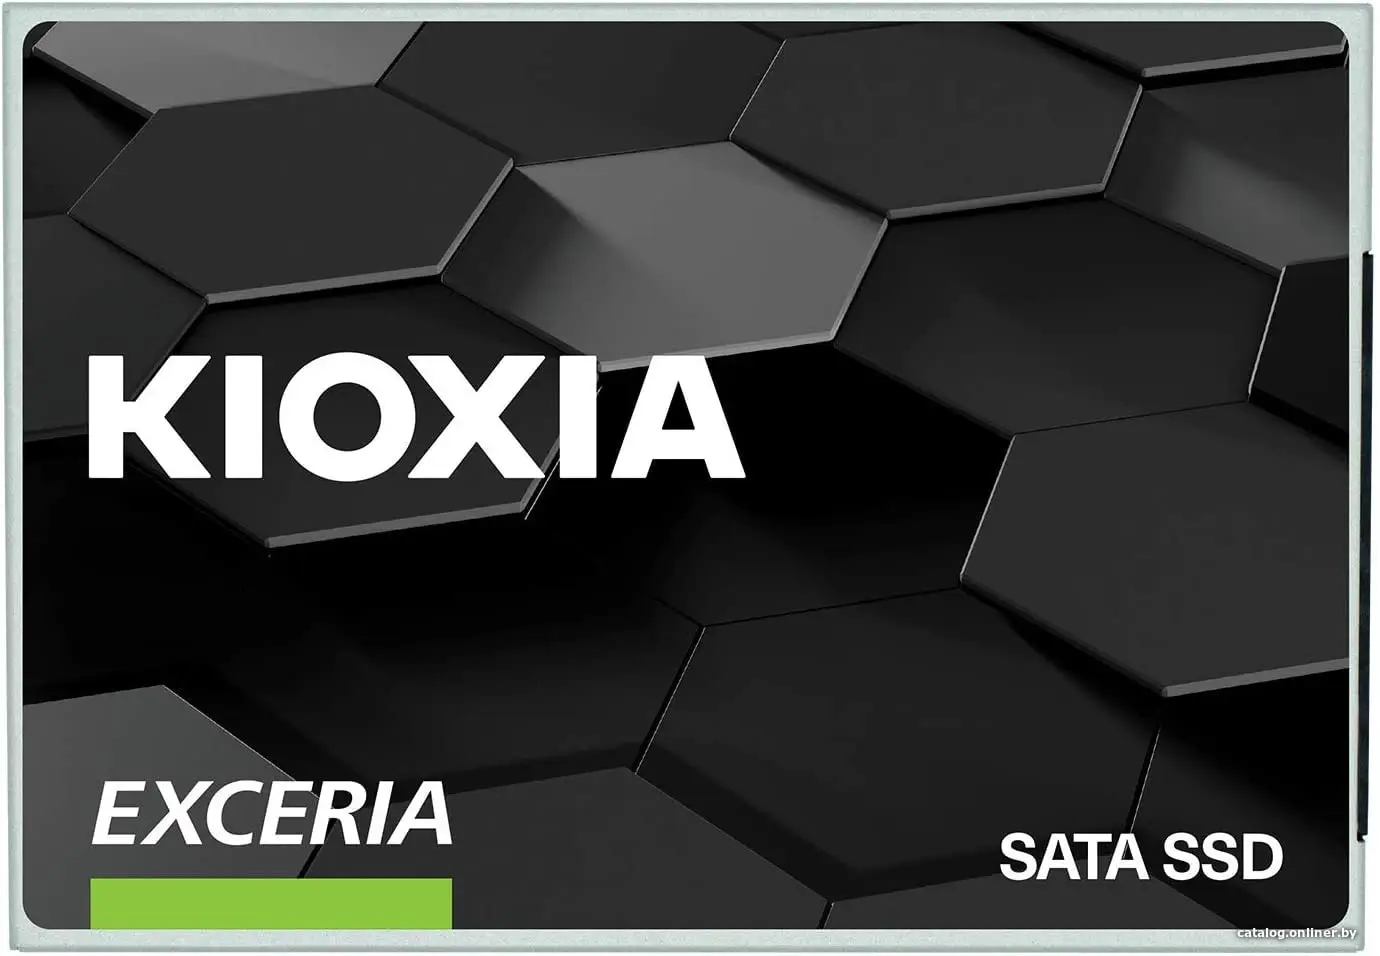 SSD диск Kioxia Exceria 960GB (LTC10Z960GG8)